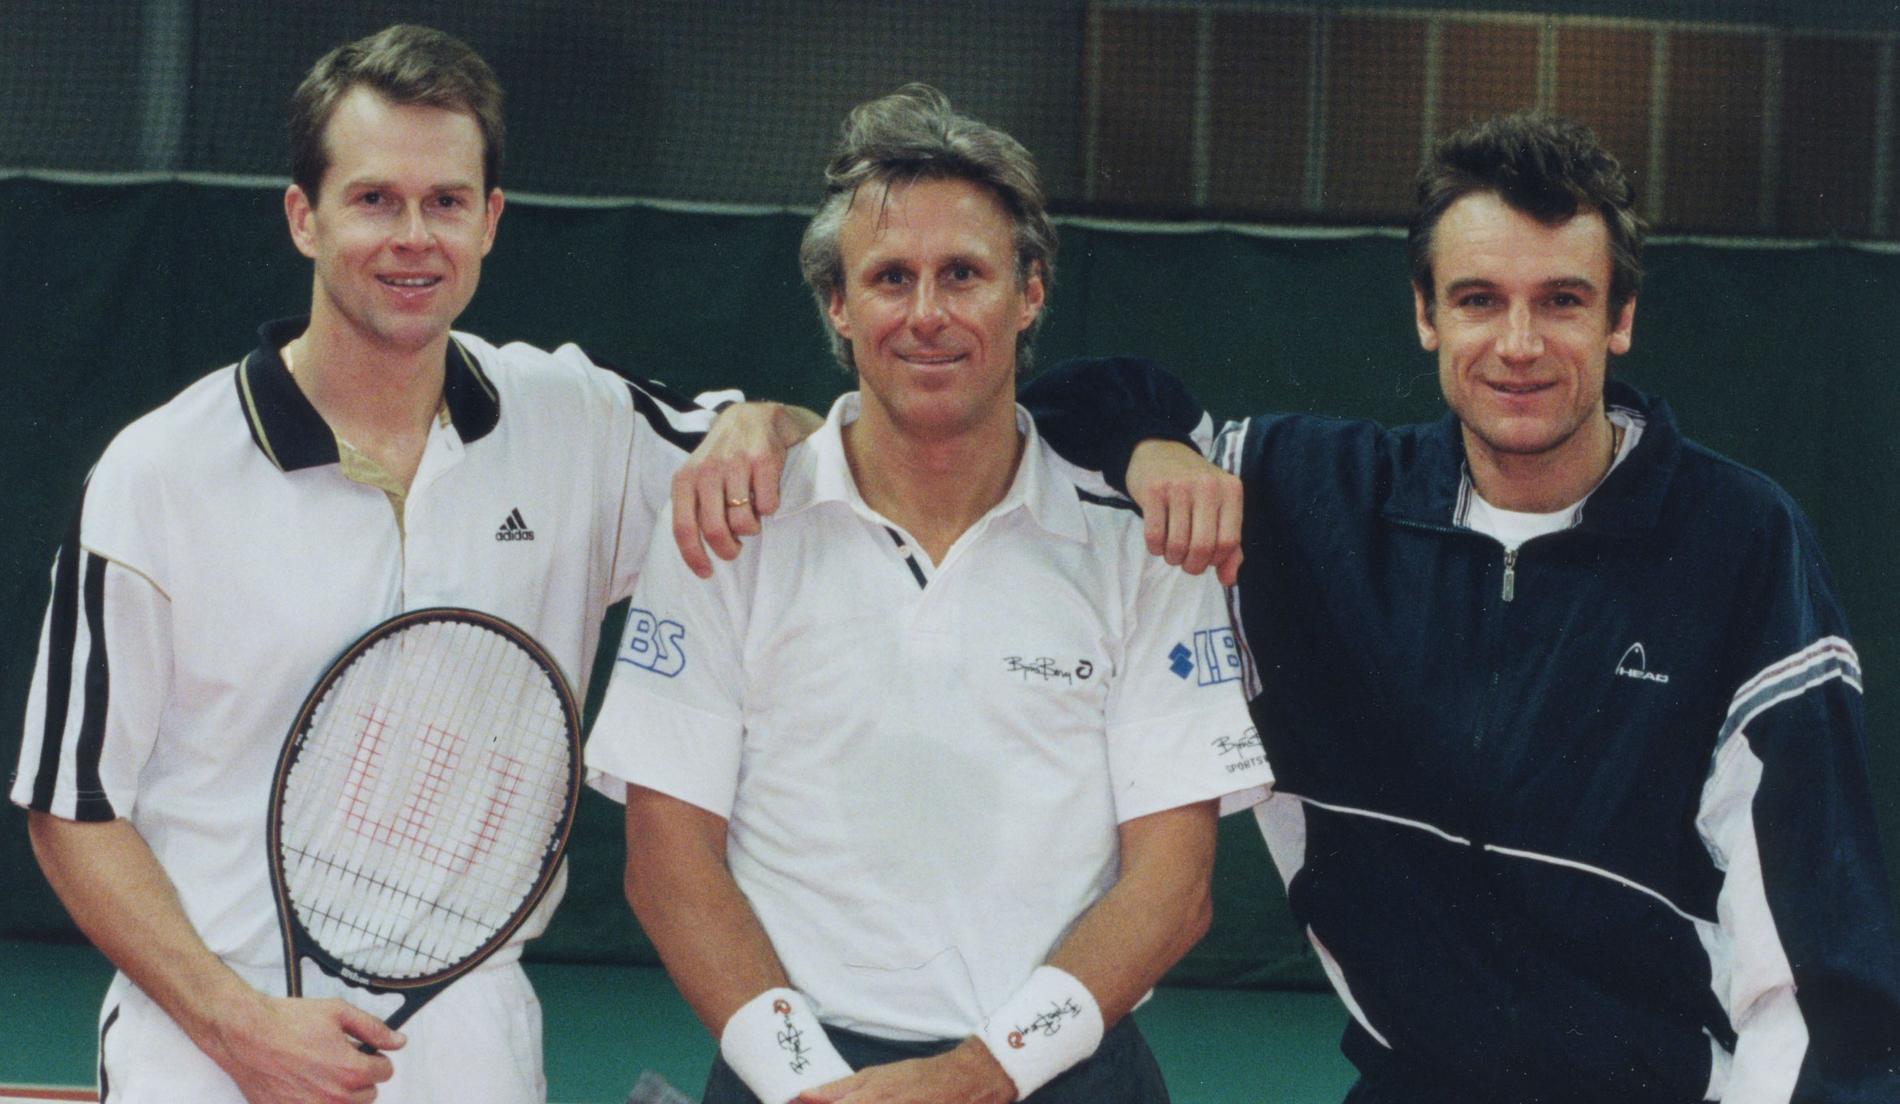 Trio i tenniskungar: Stefan Edberg, Björn Borg och Mats Wilander. Året var 2010.